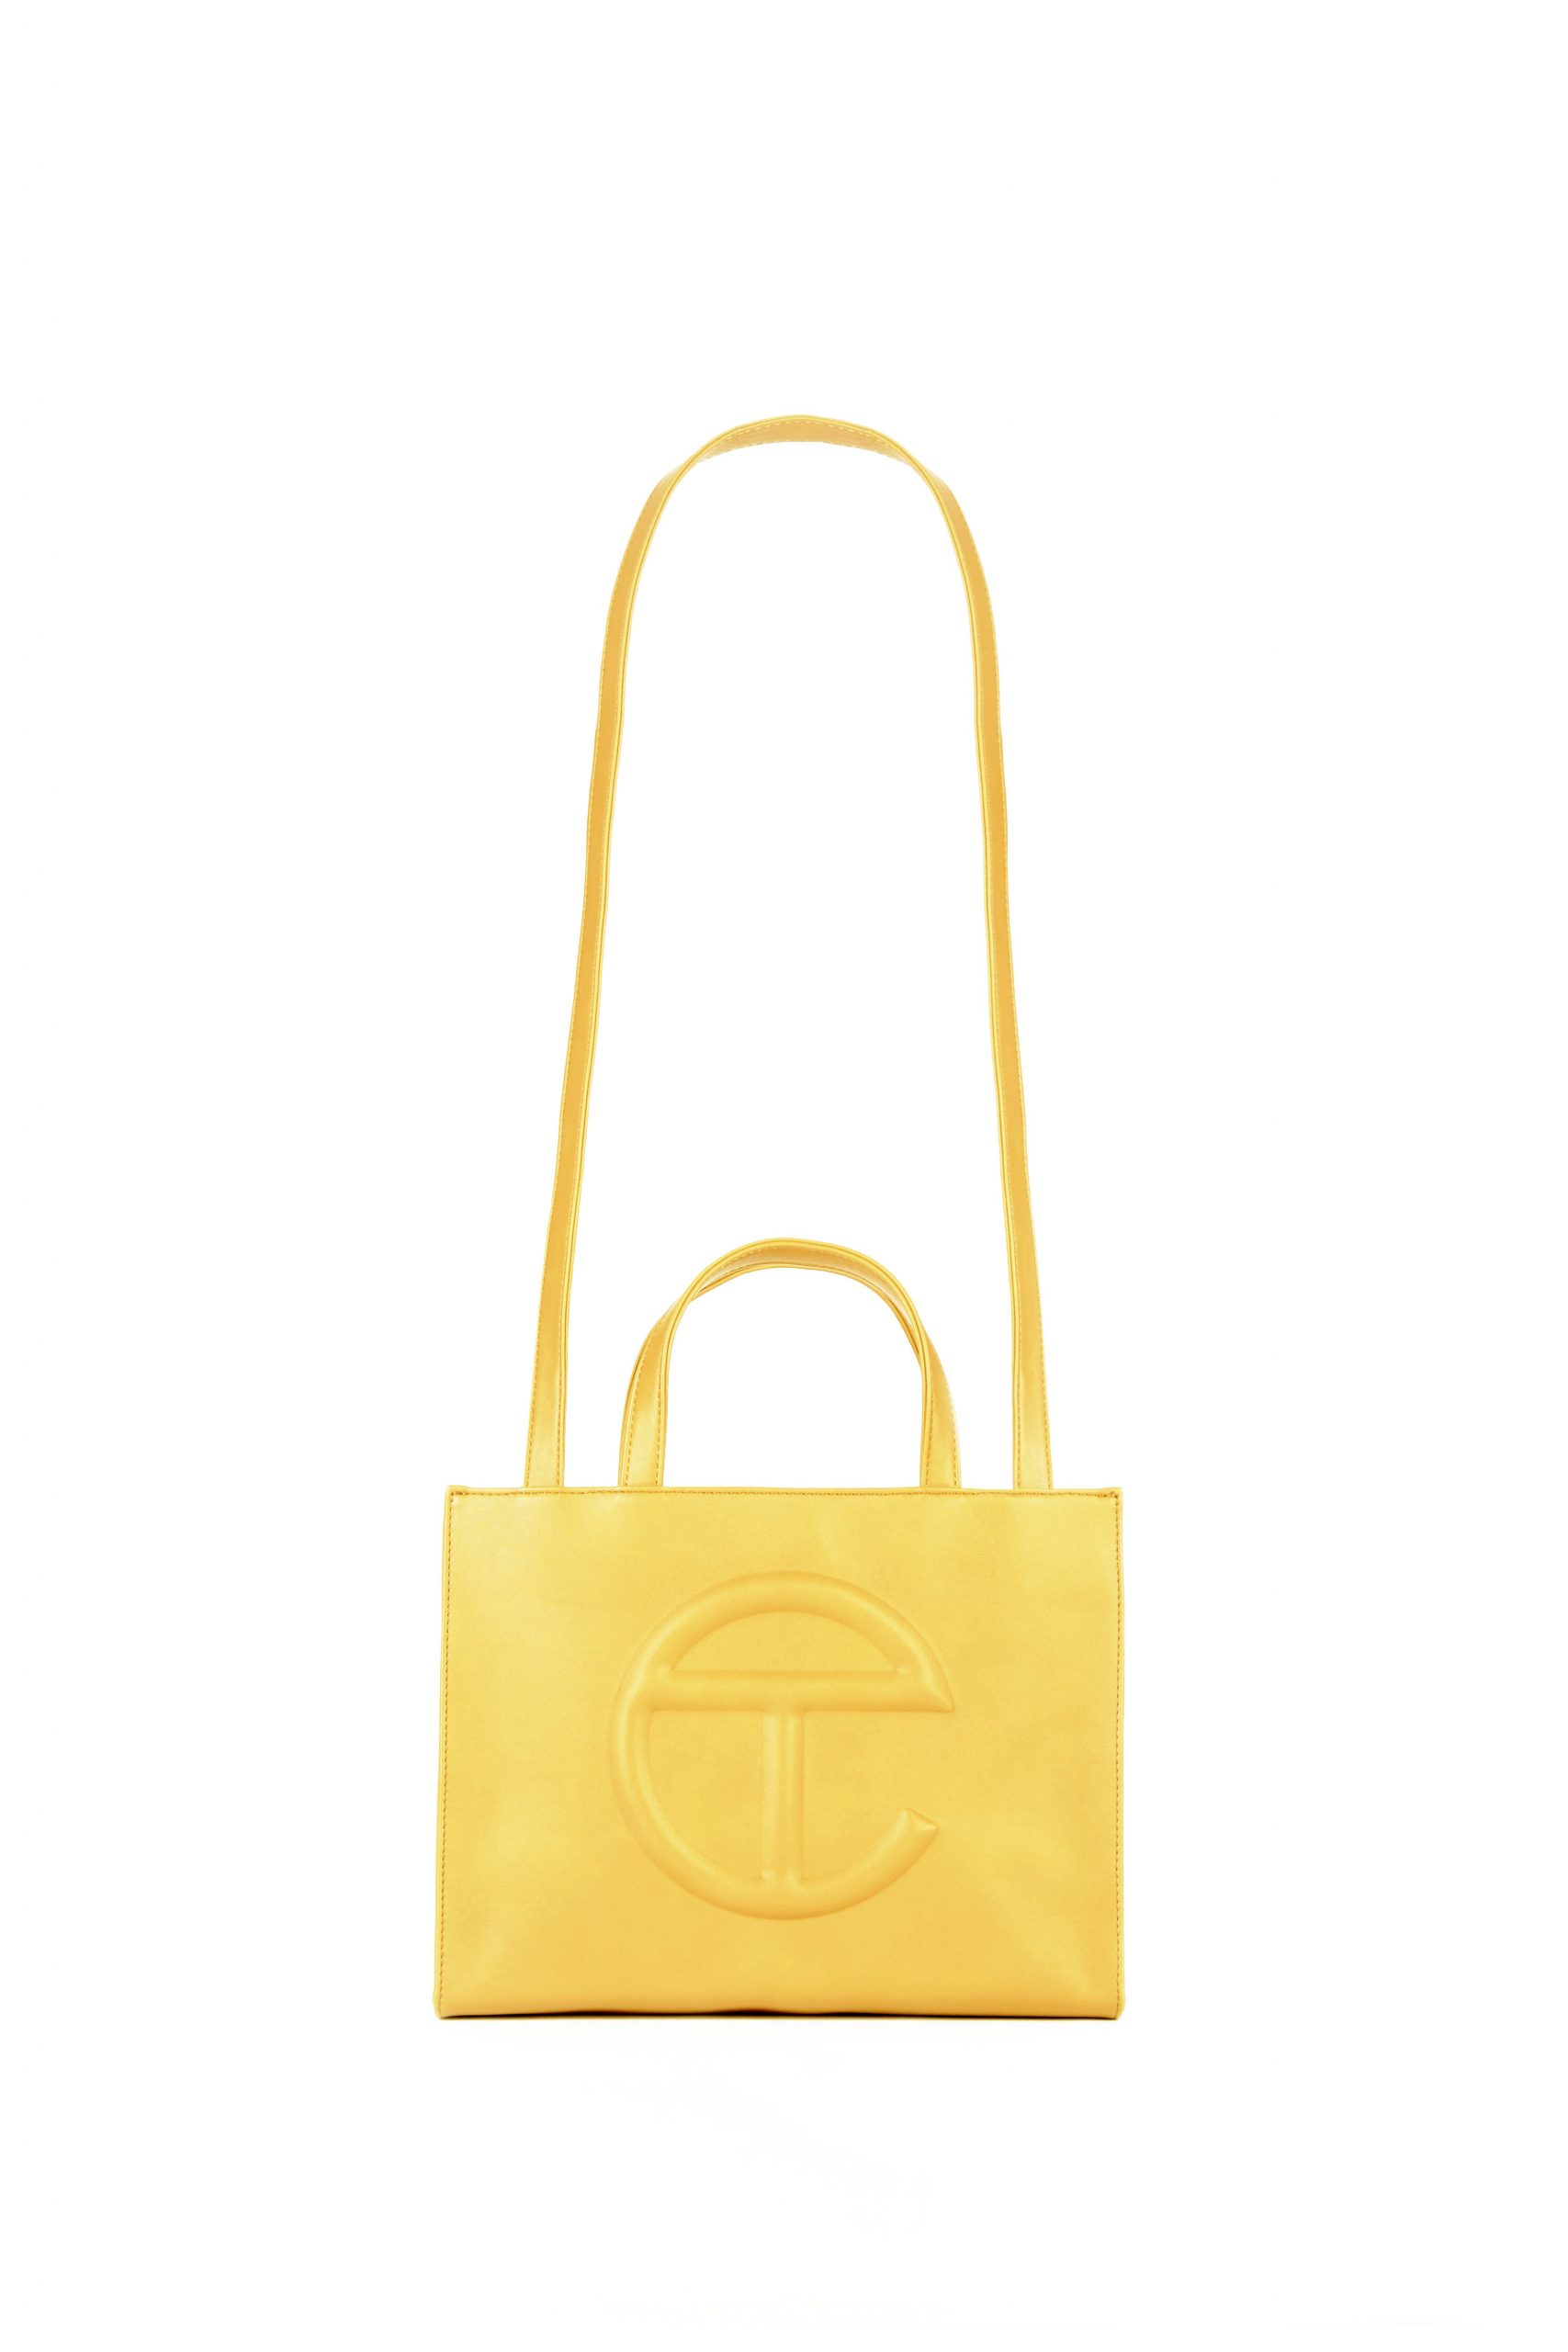 Medium Yellow Shopping Bag